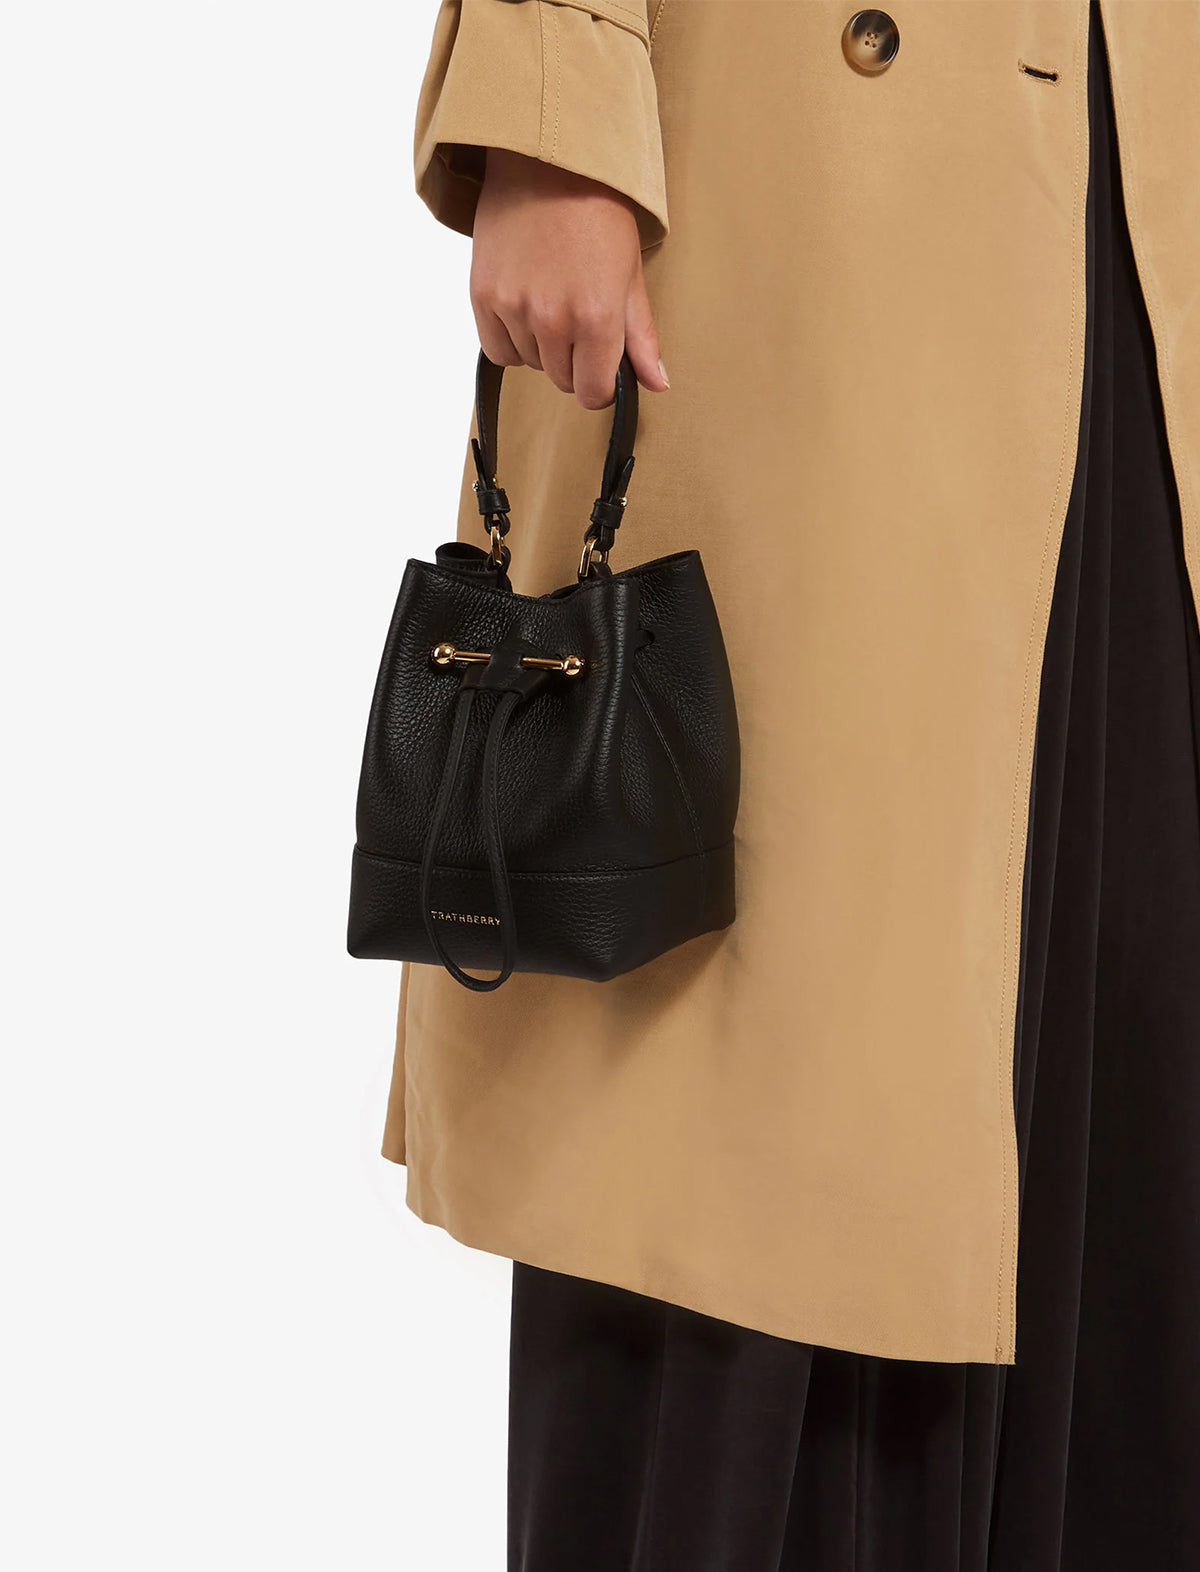 STRATHBERRY Lana Osette Bag in Black